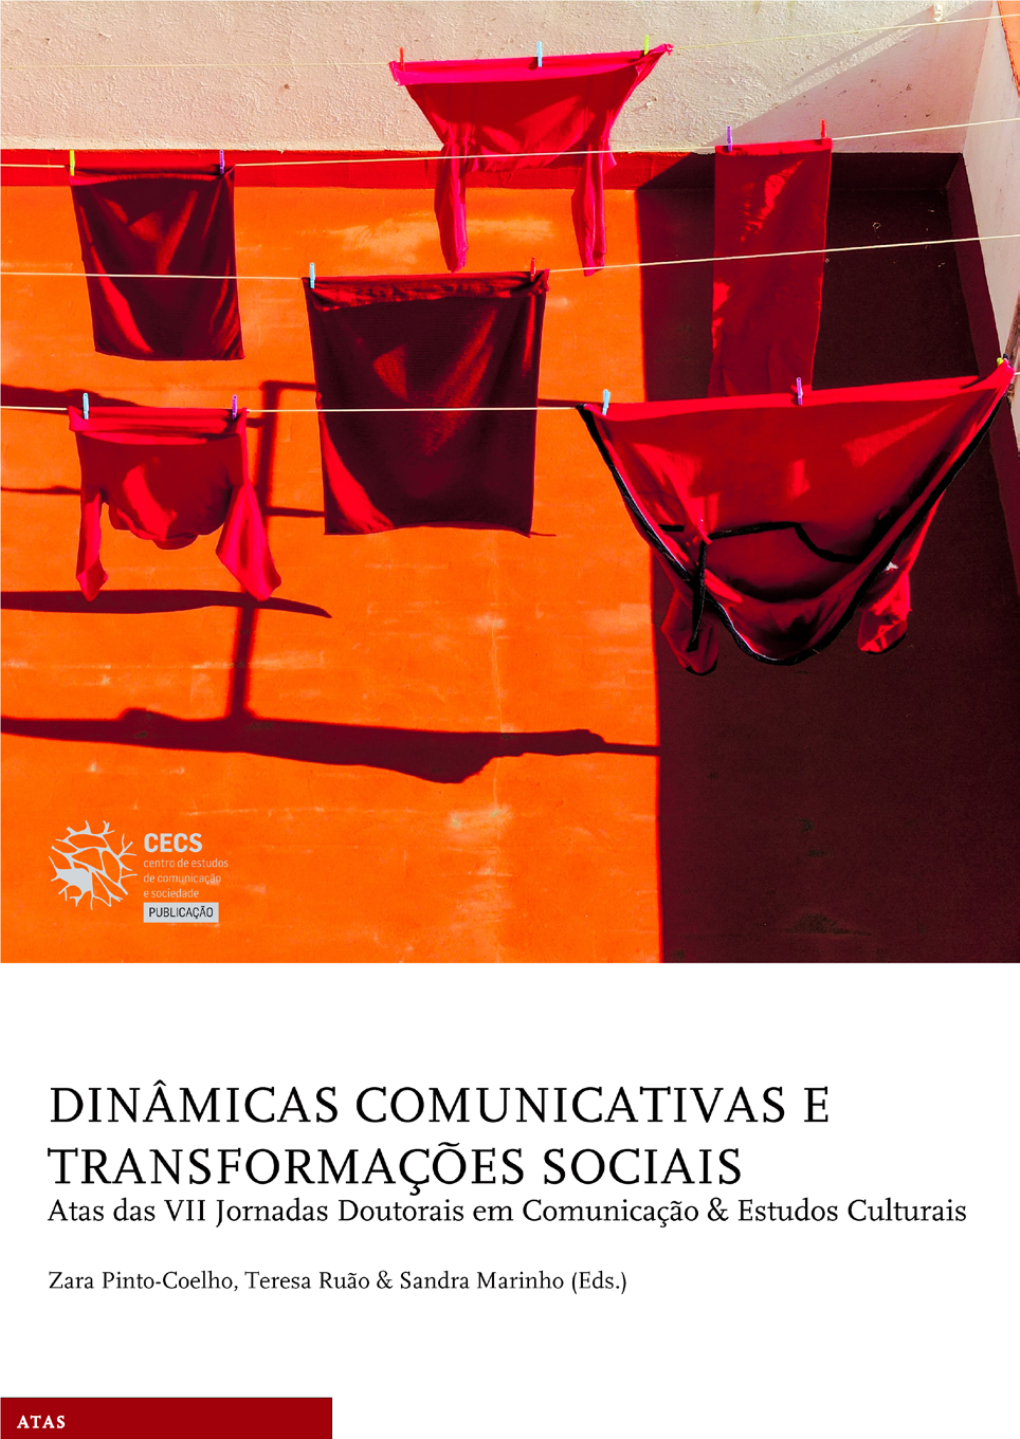 Dinâmicas Comunicativas E Transformações Sociais. Atas Das VII Jornadas Doutorais Em Comunicação & Estudos Culturais